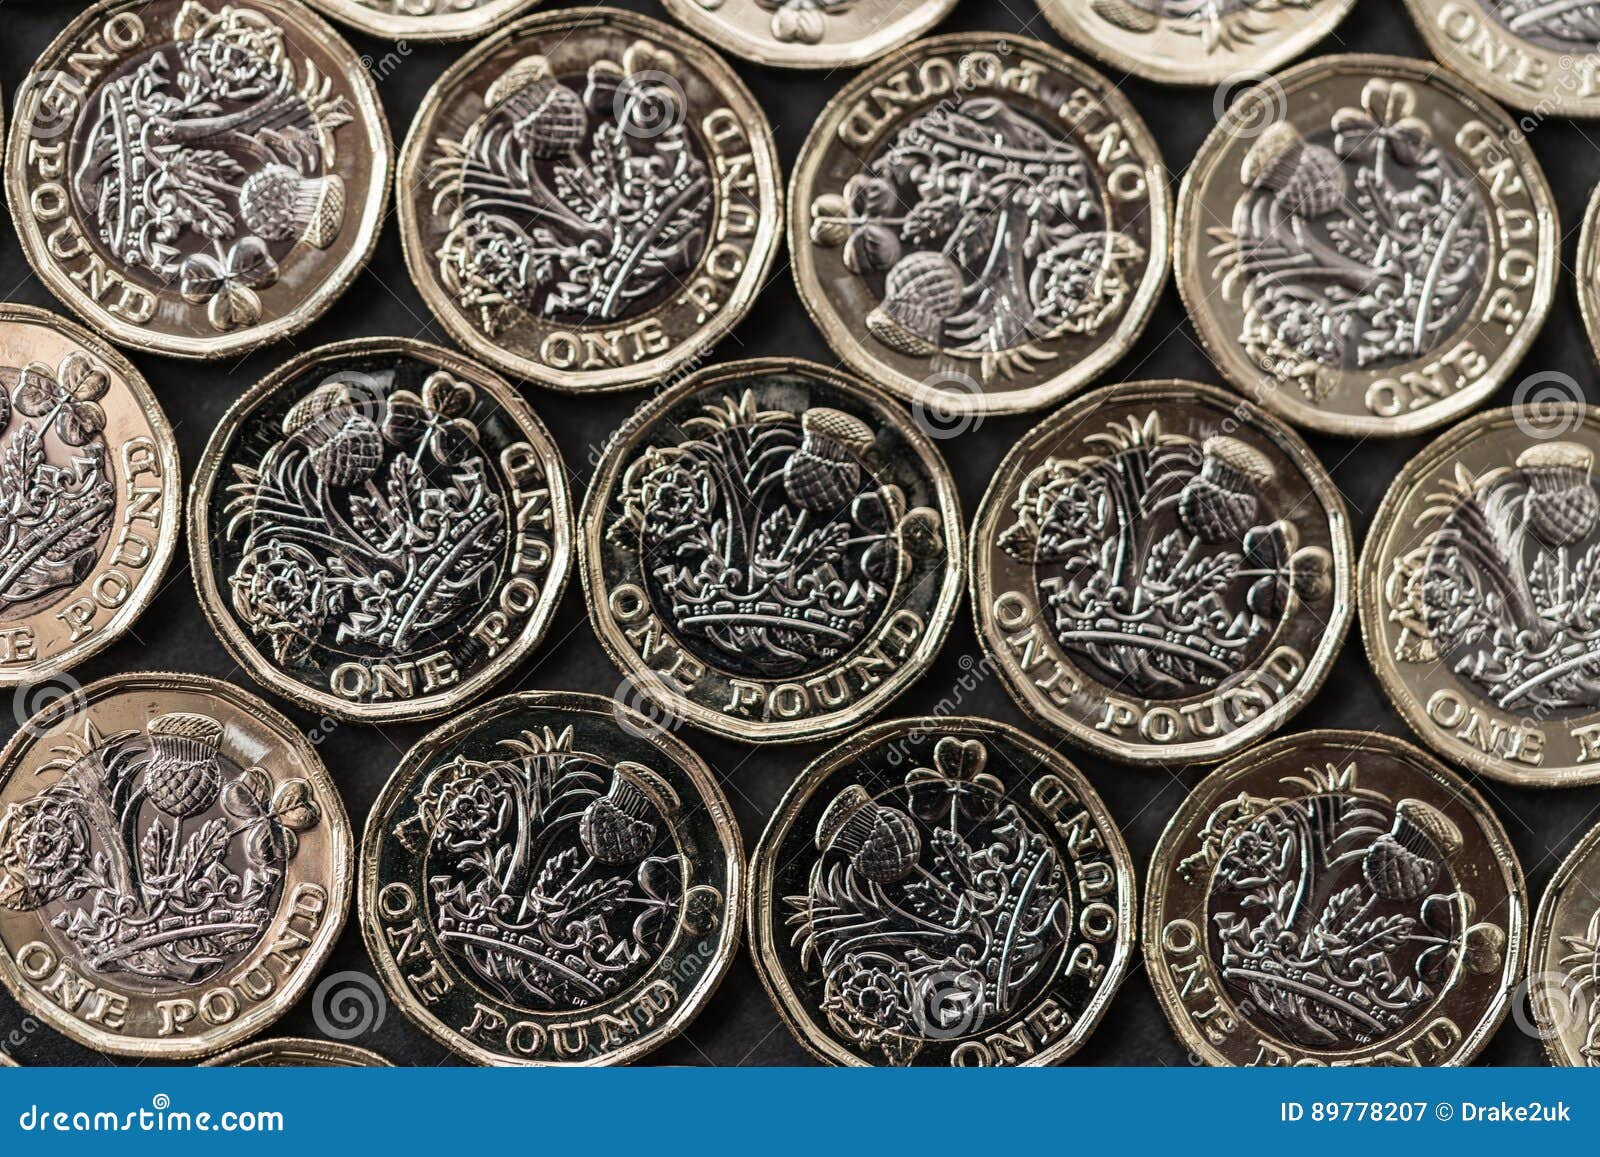 2008年英国1英镑鎏金硬币 中邮网[集邮/钱币/邮票/金银币/收藏资讯]全球最大收藏品商城